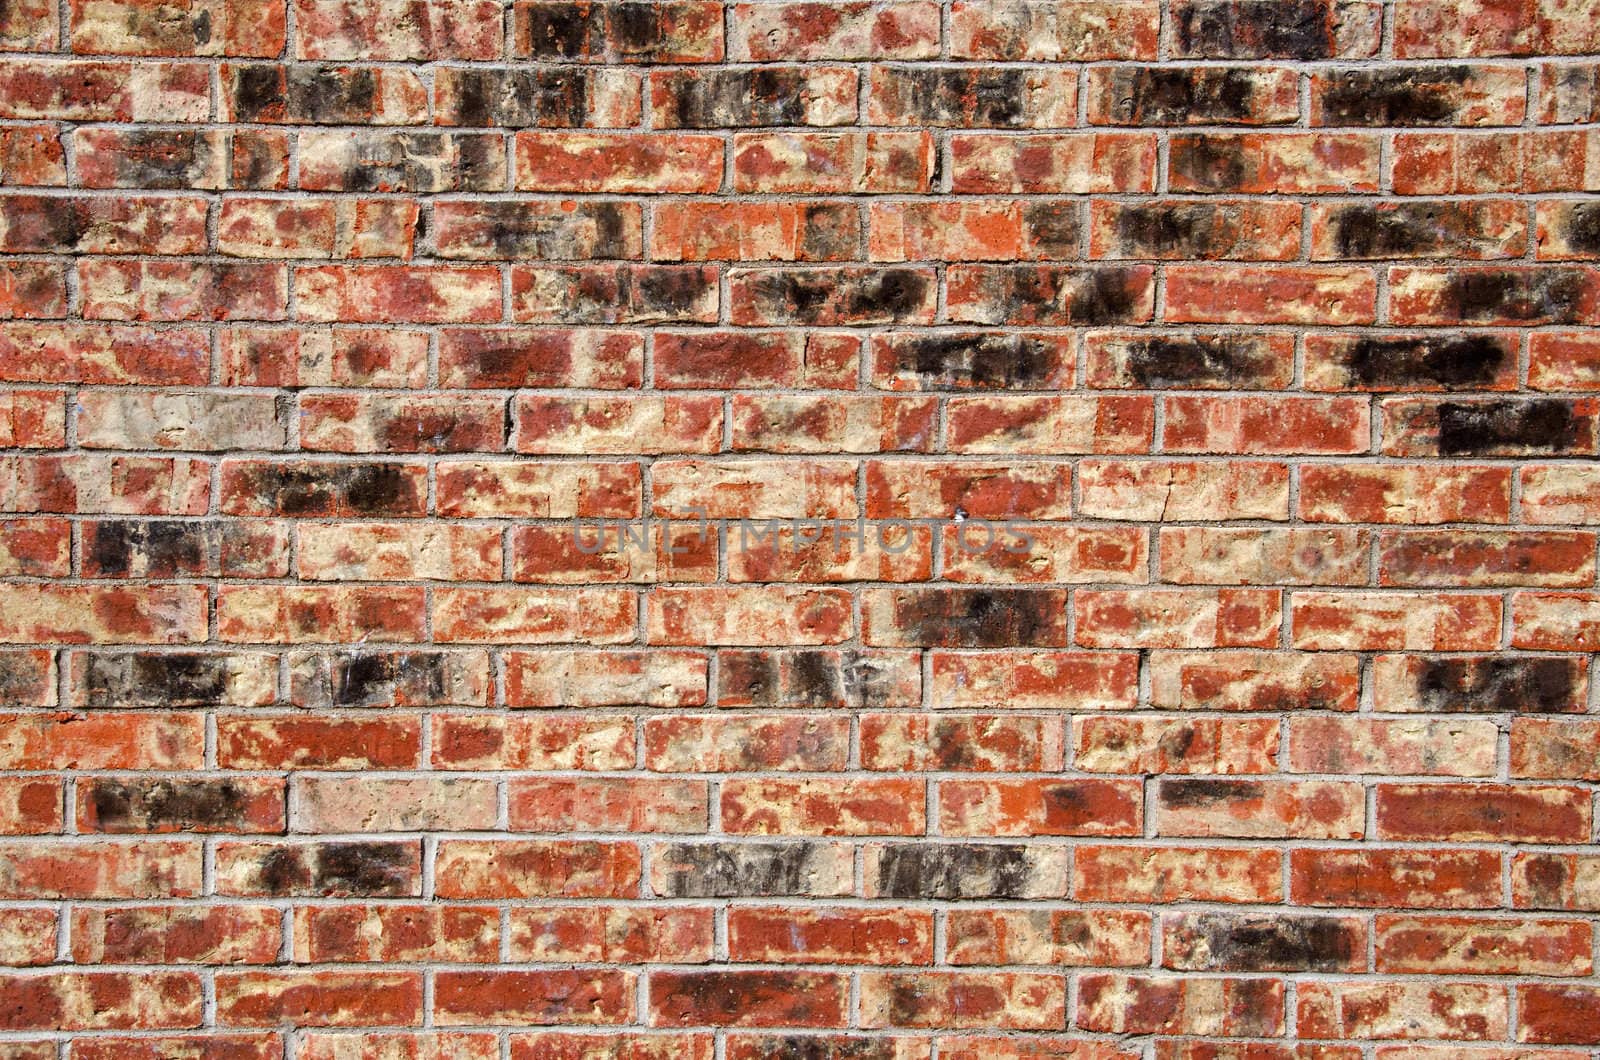 Image of a multi hued brick wall